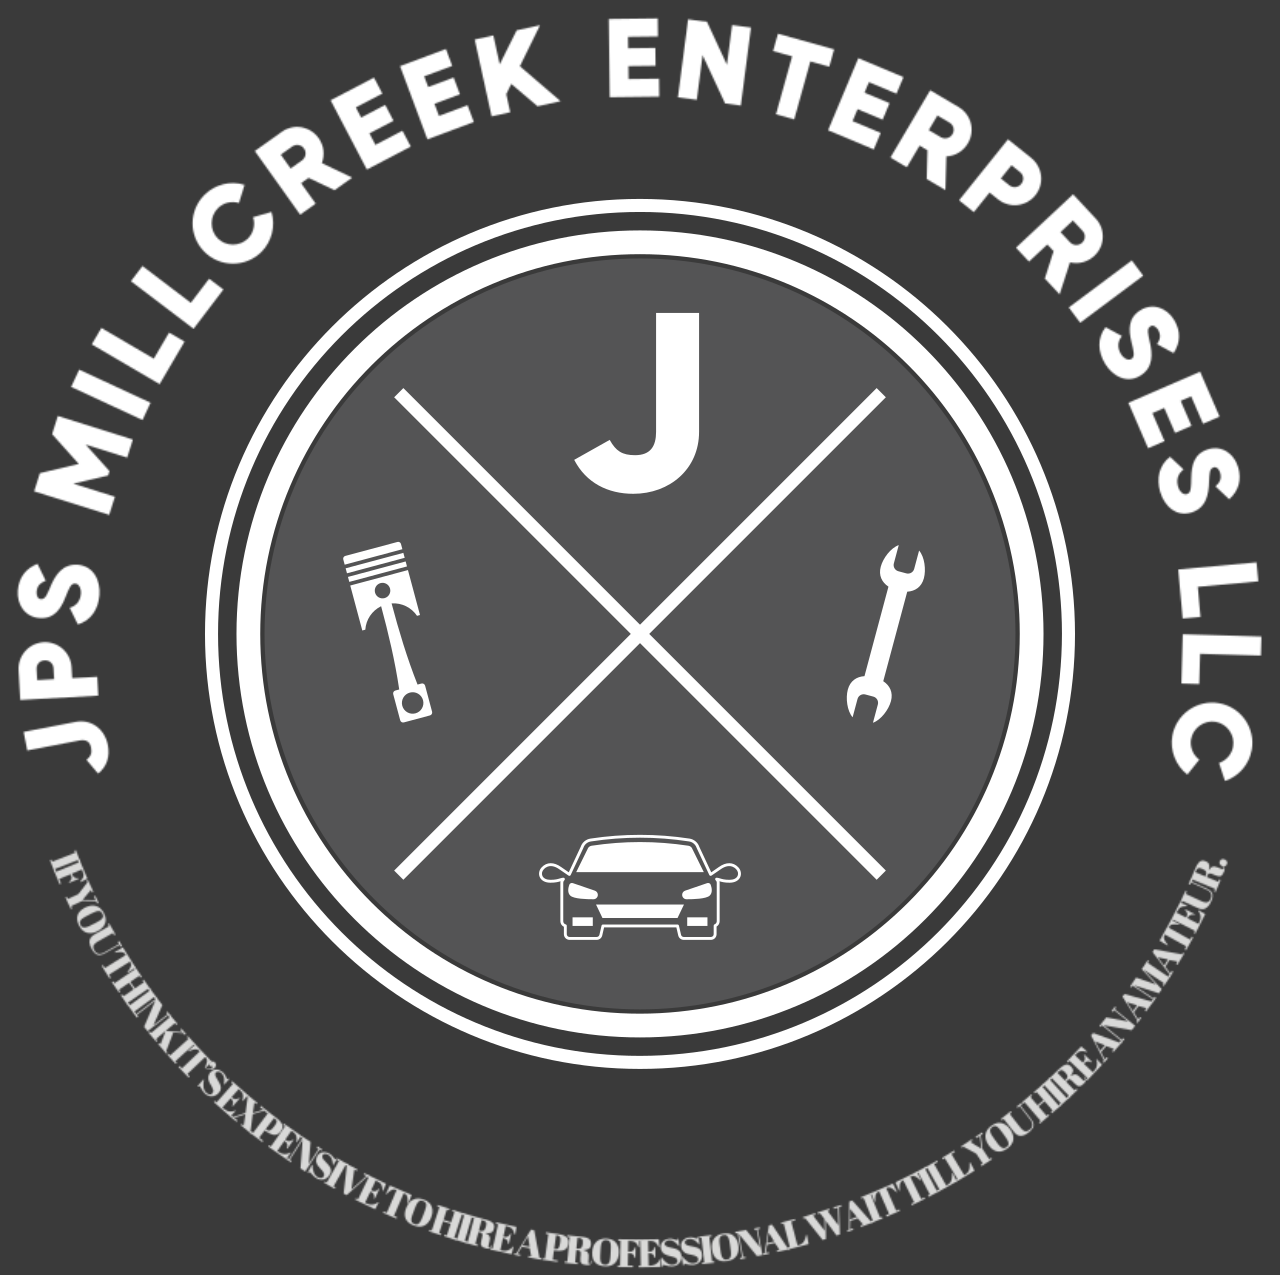 JPS MILLCREEK ENTERPRISES LLC's web page